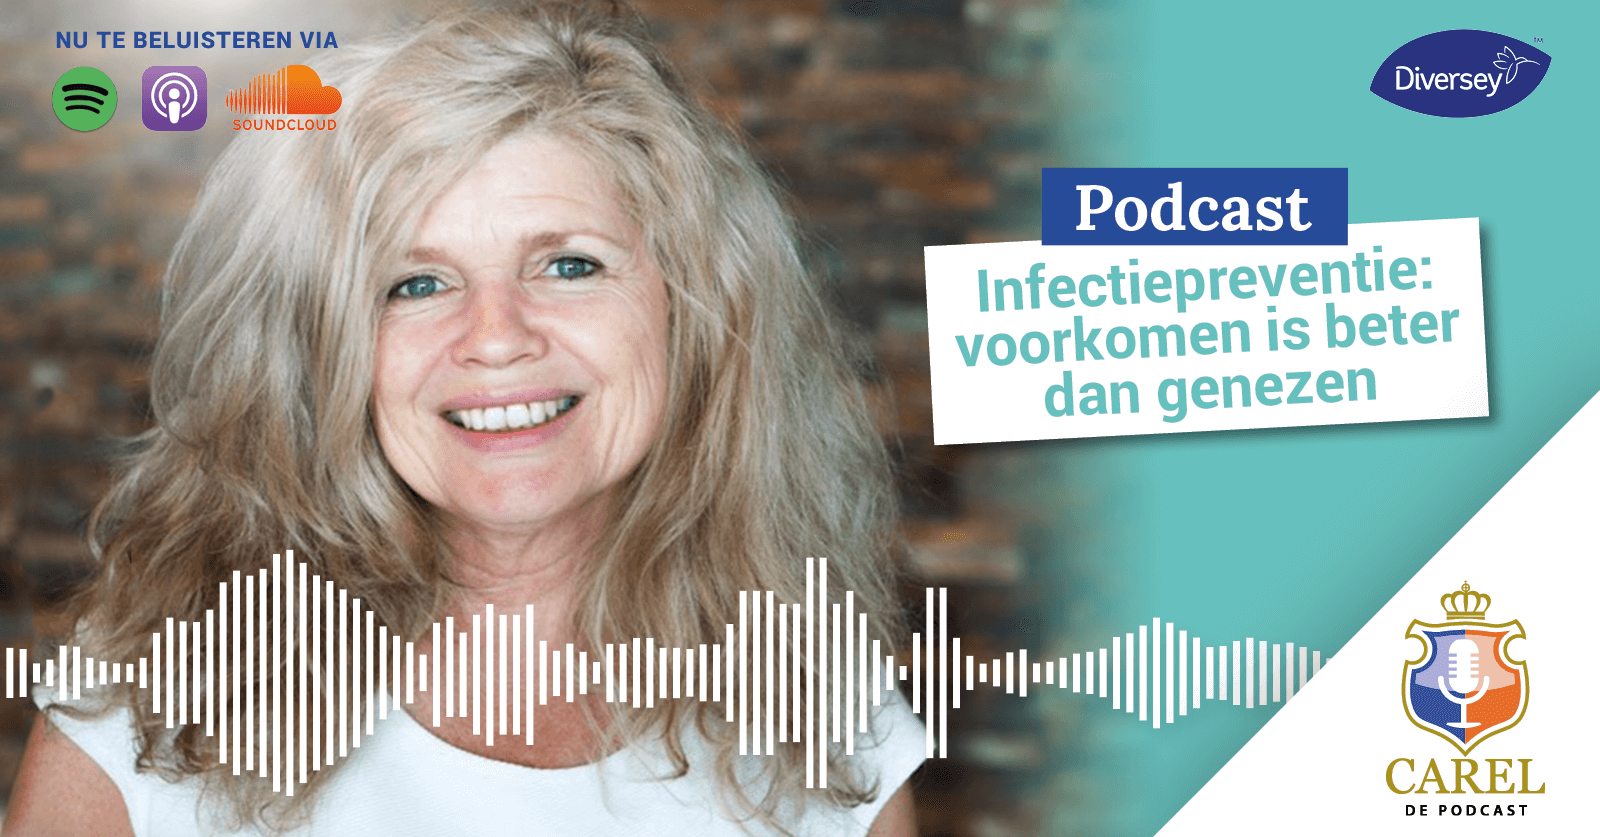 Podcast infectiepreventie voorkomen is beter dan genezen